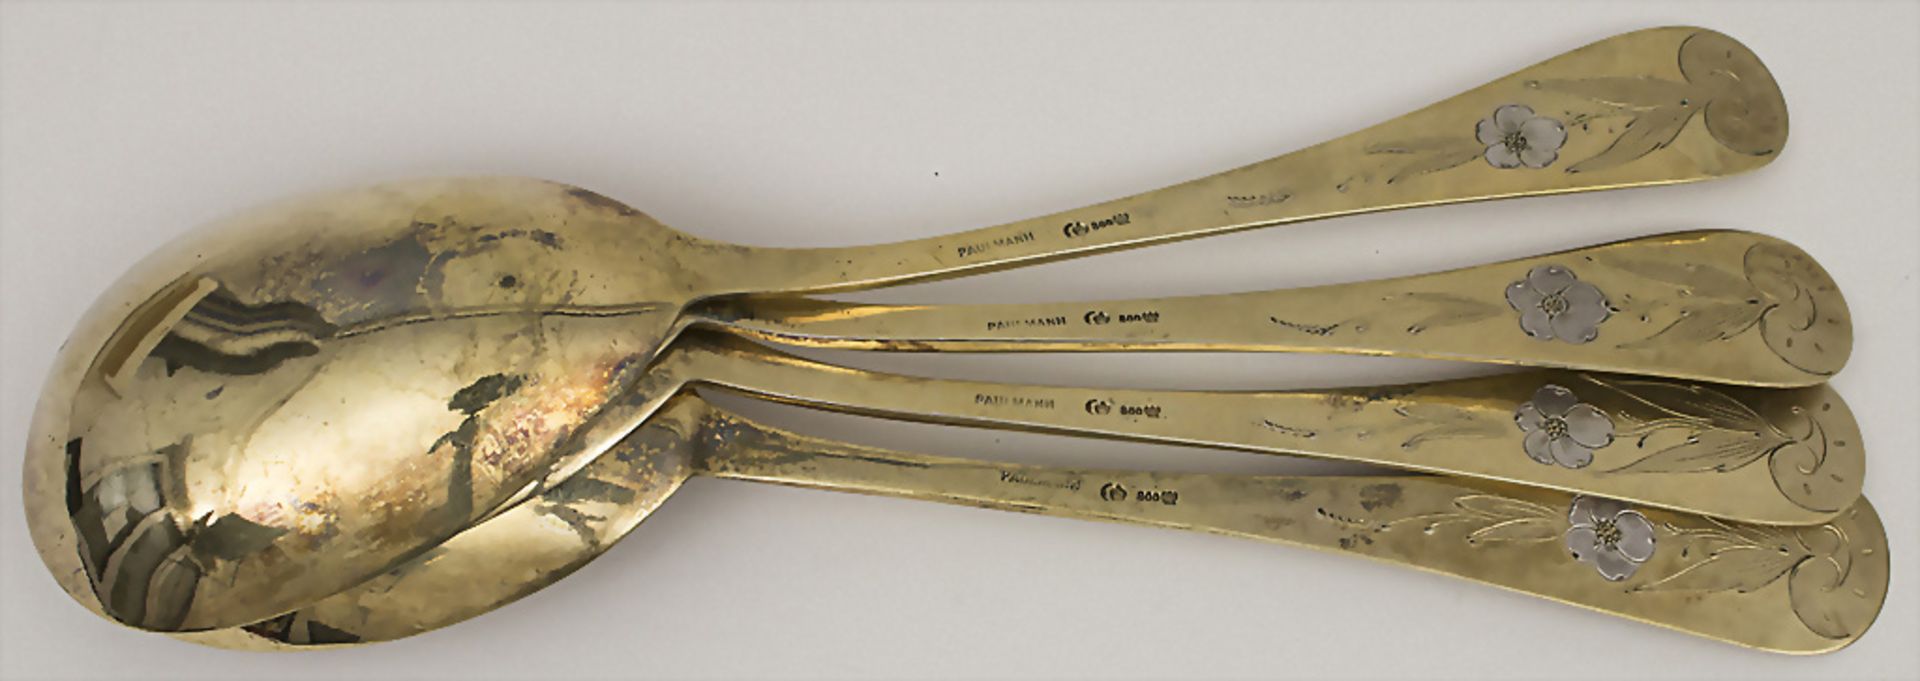 Vorlegebesteck im Etui / 4 serving spoons in a box, Bruckmann & Söhne, Heilbronn, um 1900 - Bild 3 aus 4